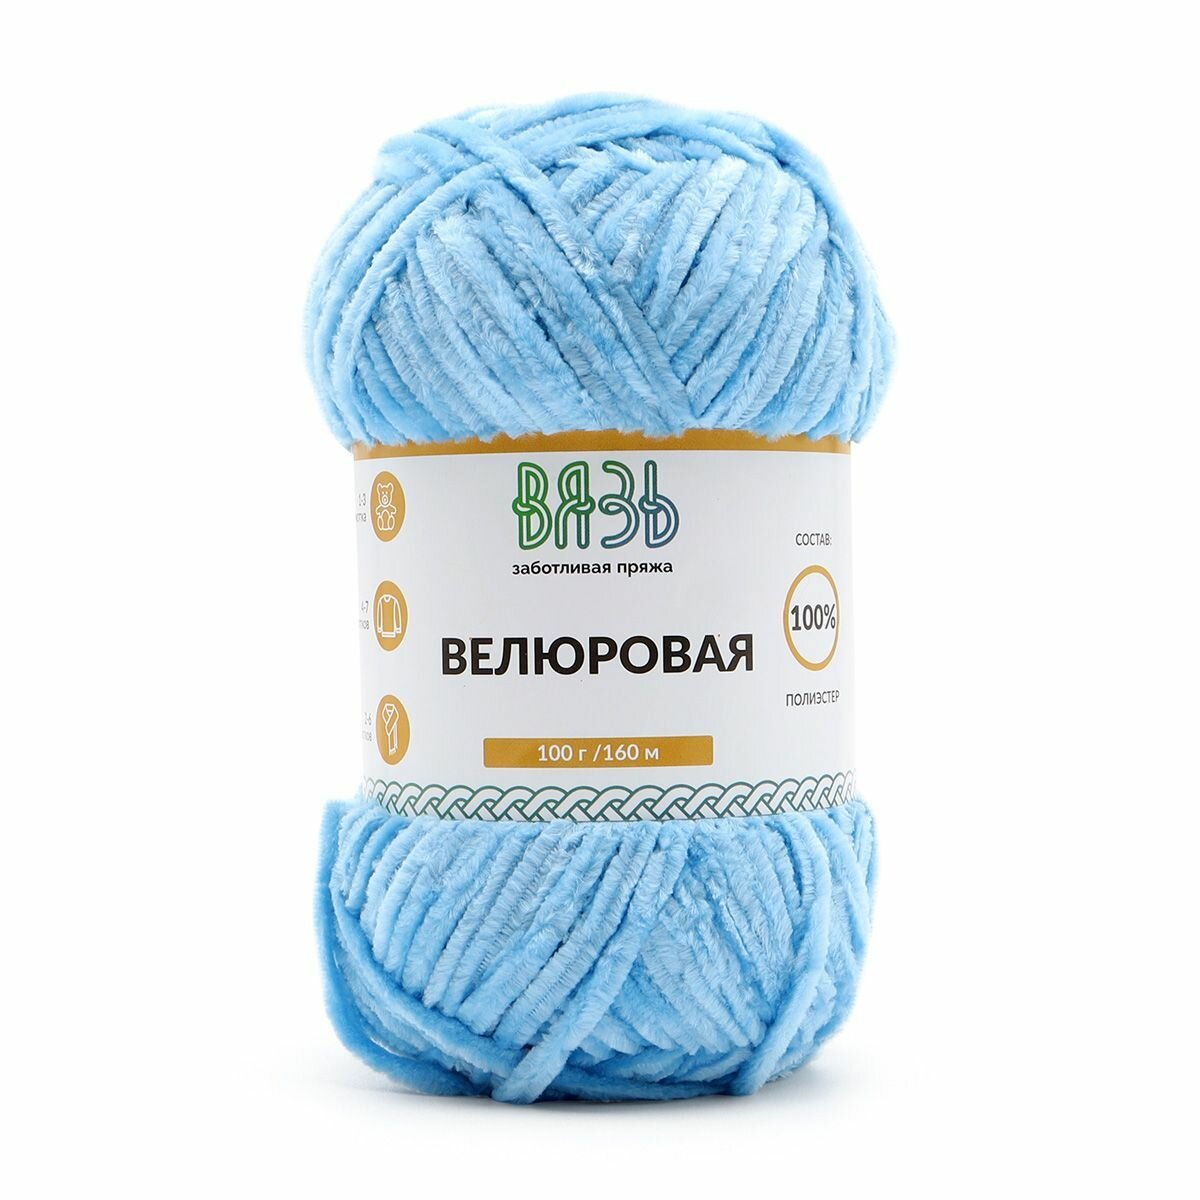 Пряжа для вязания Вязь 'Велюровая' 100г, 160м (100% полиэстер) (10 голубой), 3 мотка